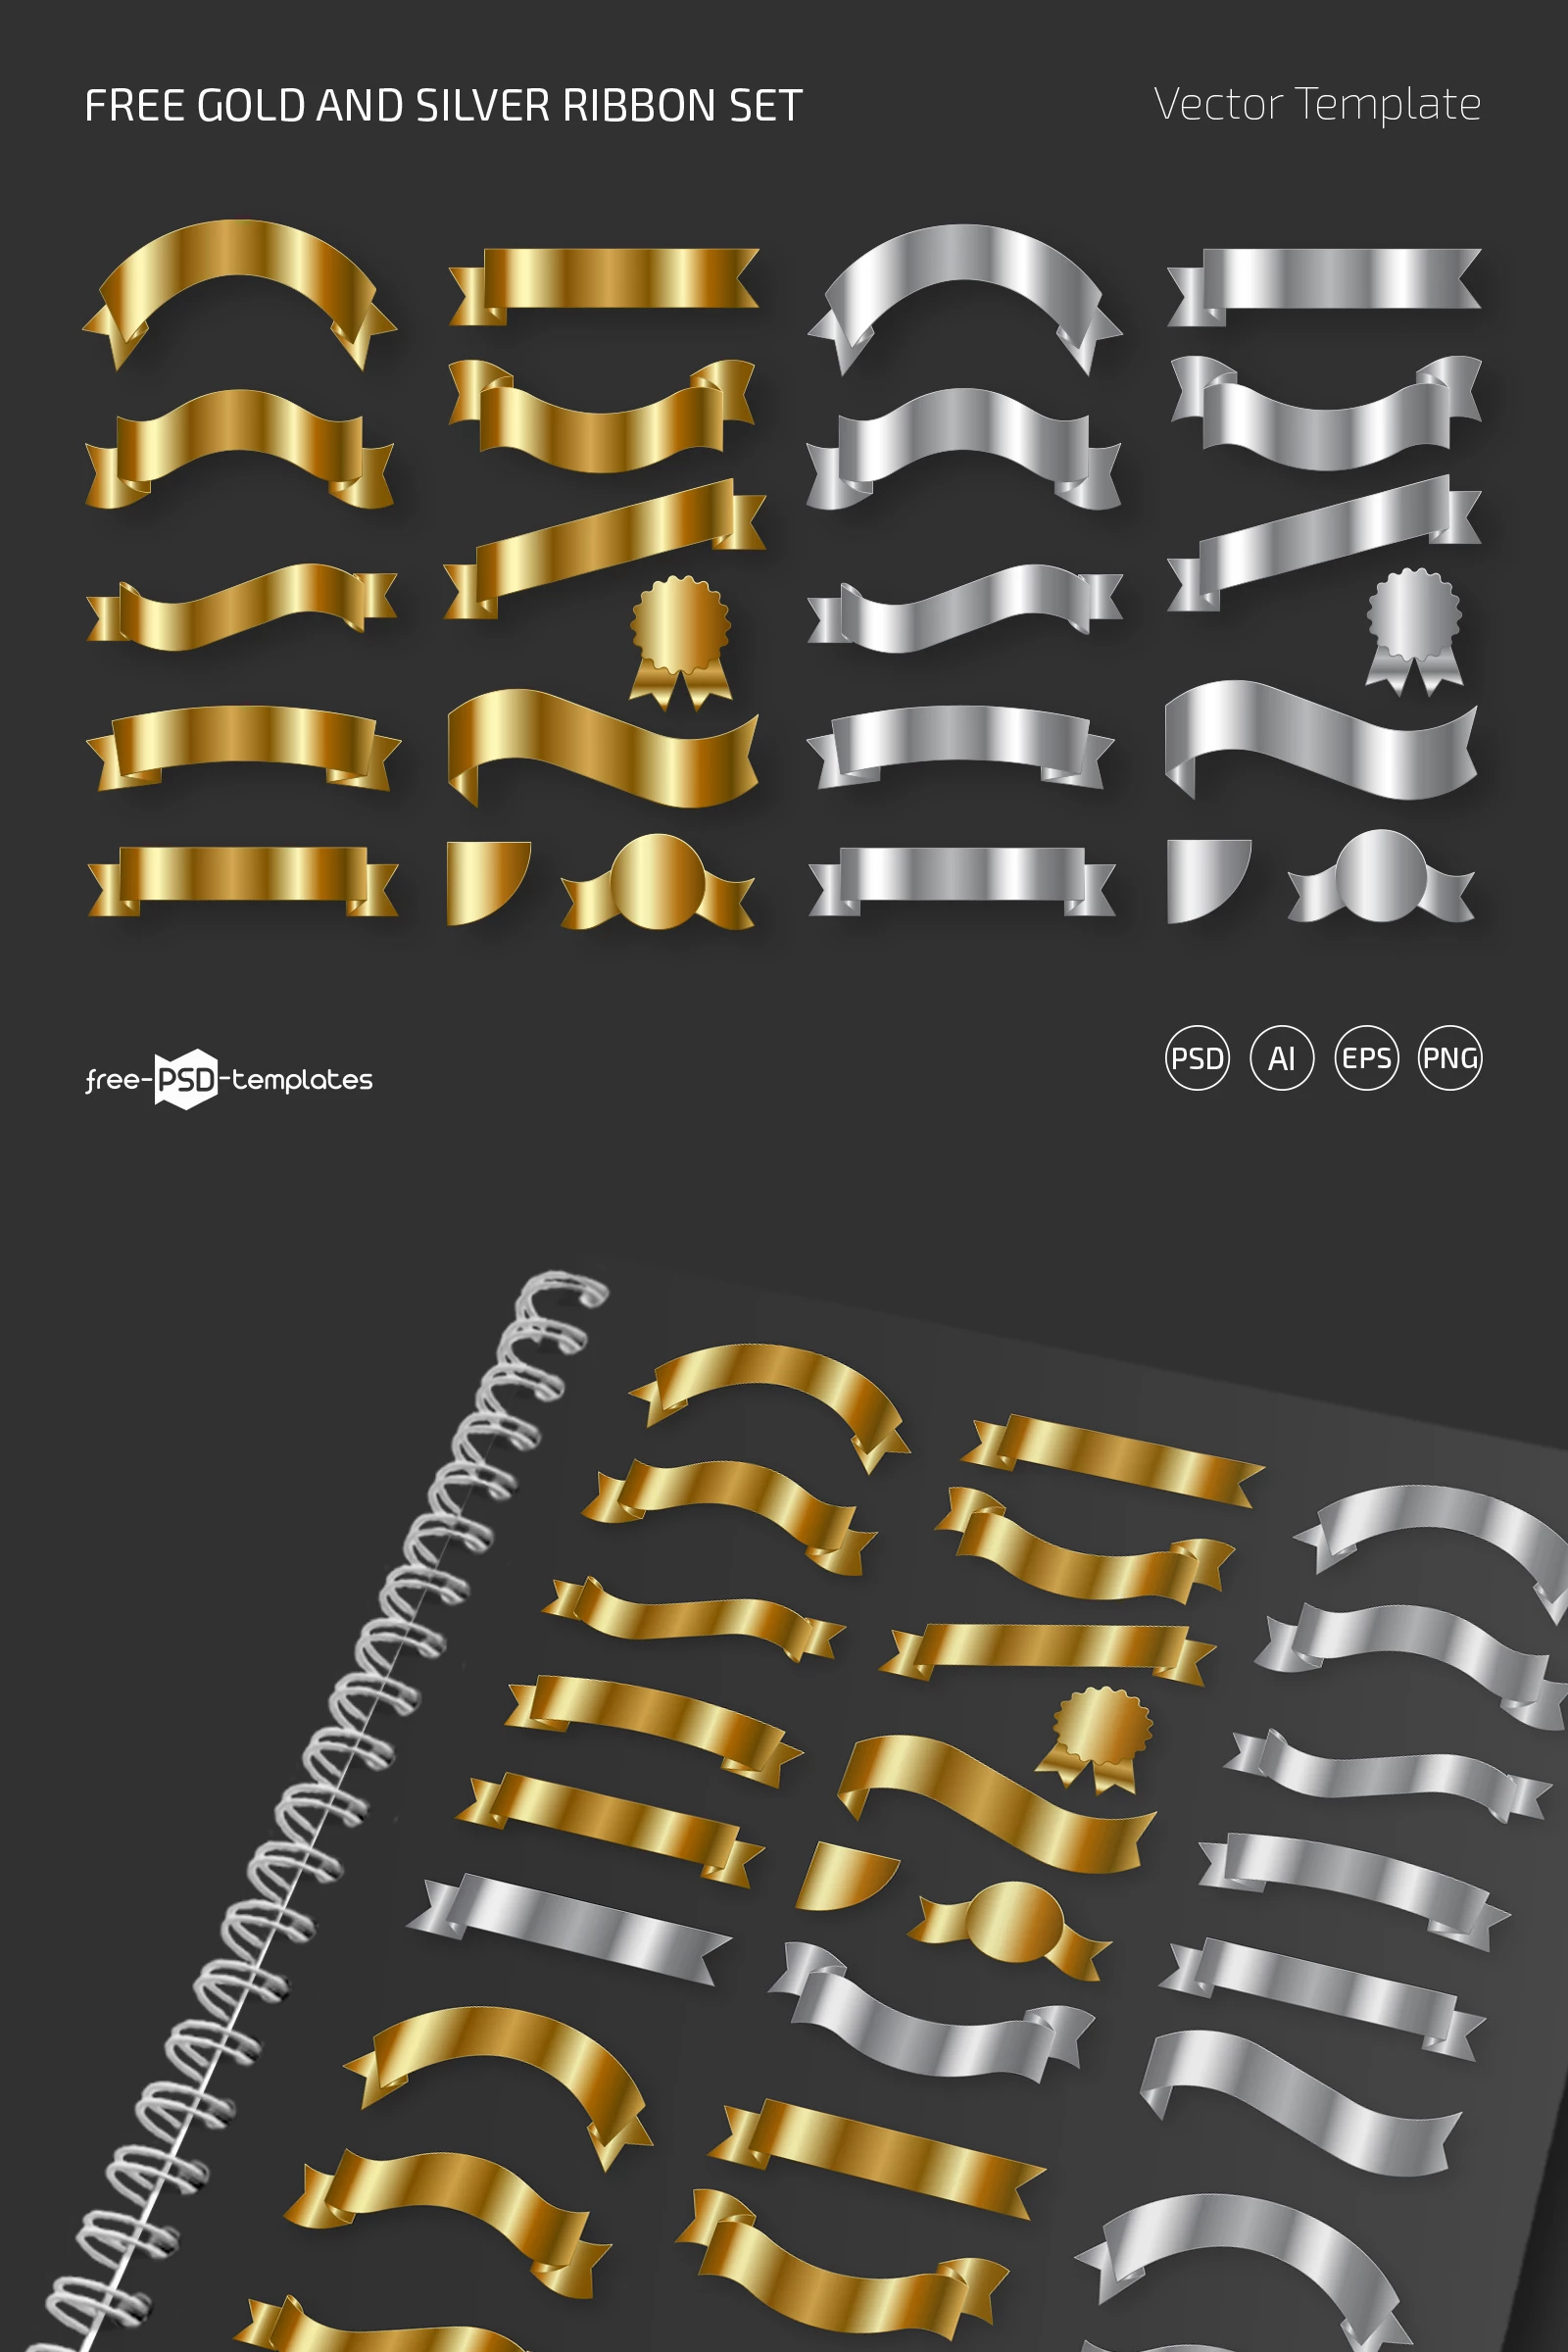 Free Gold and Silver Ribbon Set (PSD + Vector)